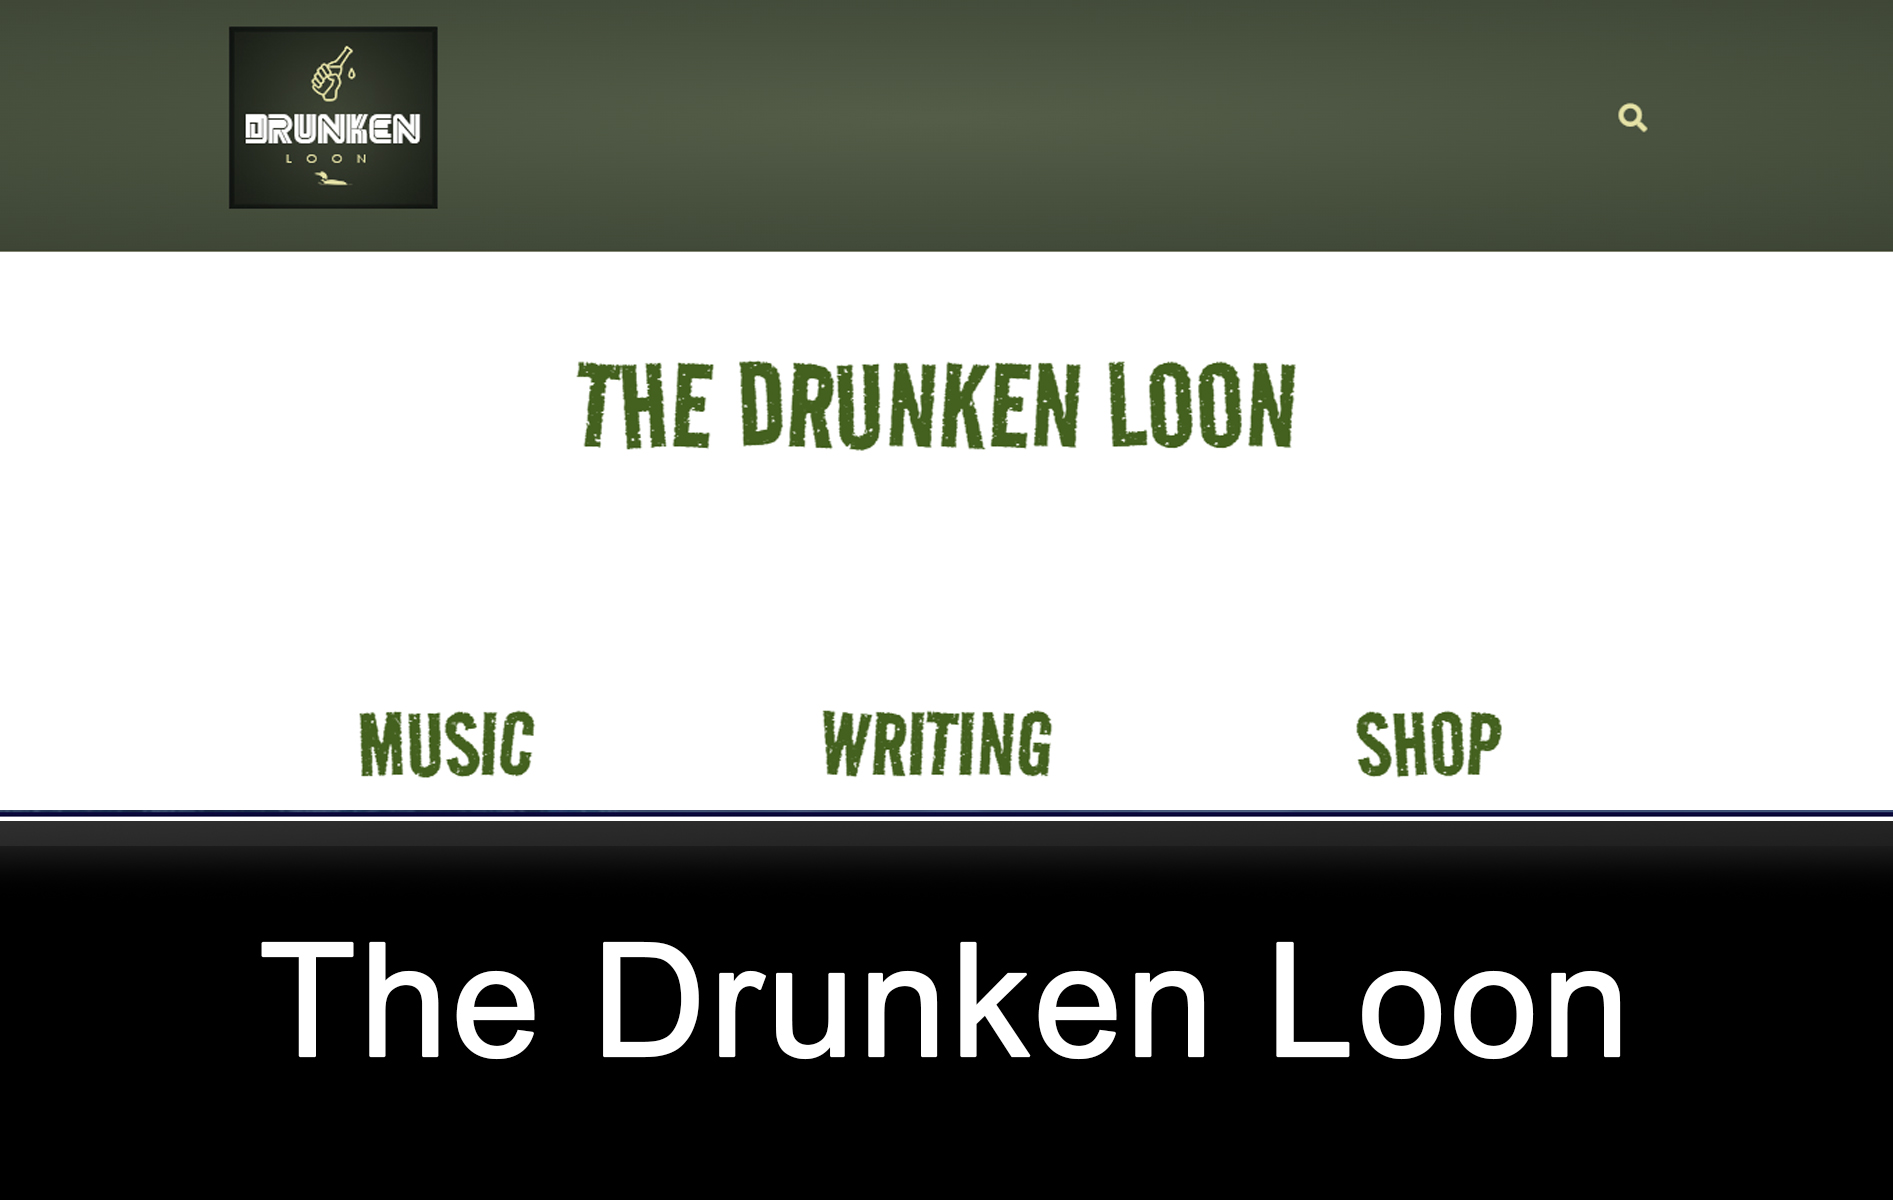 The Drunken Loon Website Image